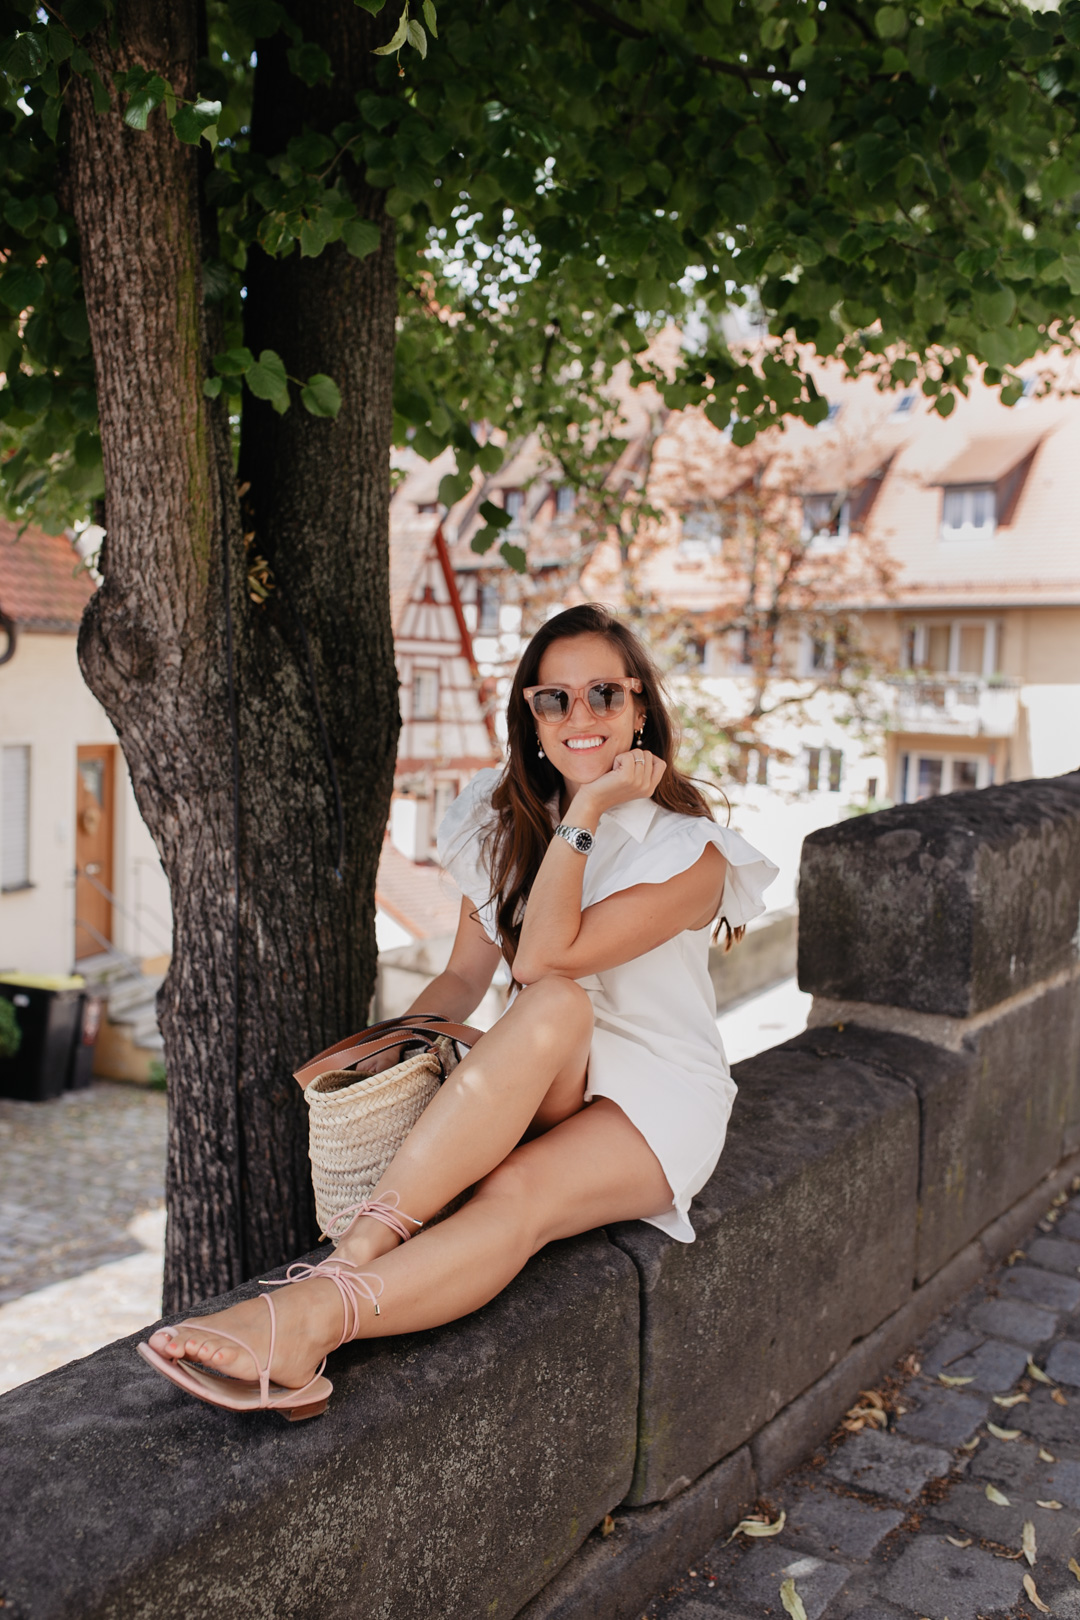 Sommerlook mit weißem Sommerkleid mit Volants von Zara, Sandalen von Emme Parsons und Korbtasche von Loewe - Pieces of Mariposa